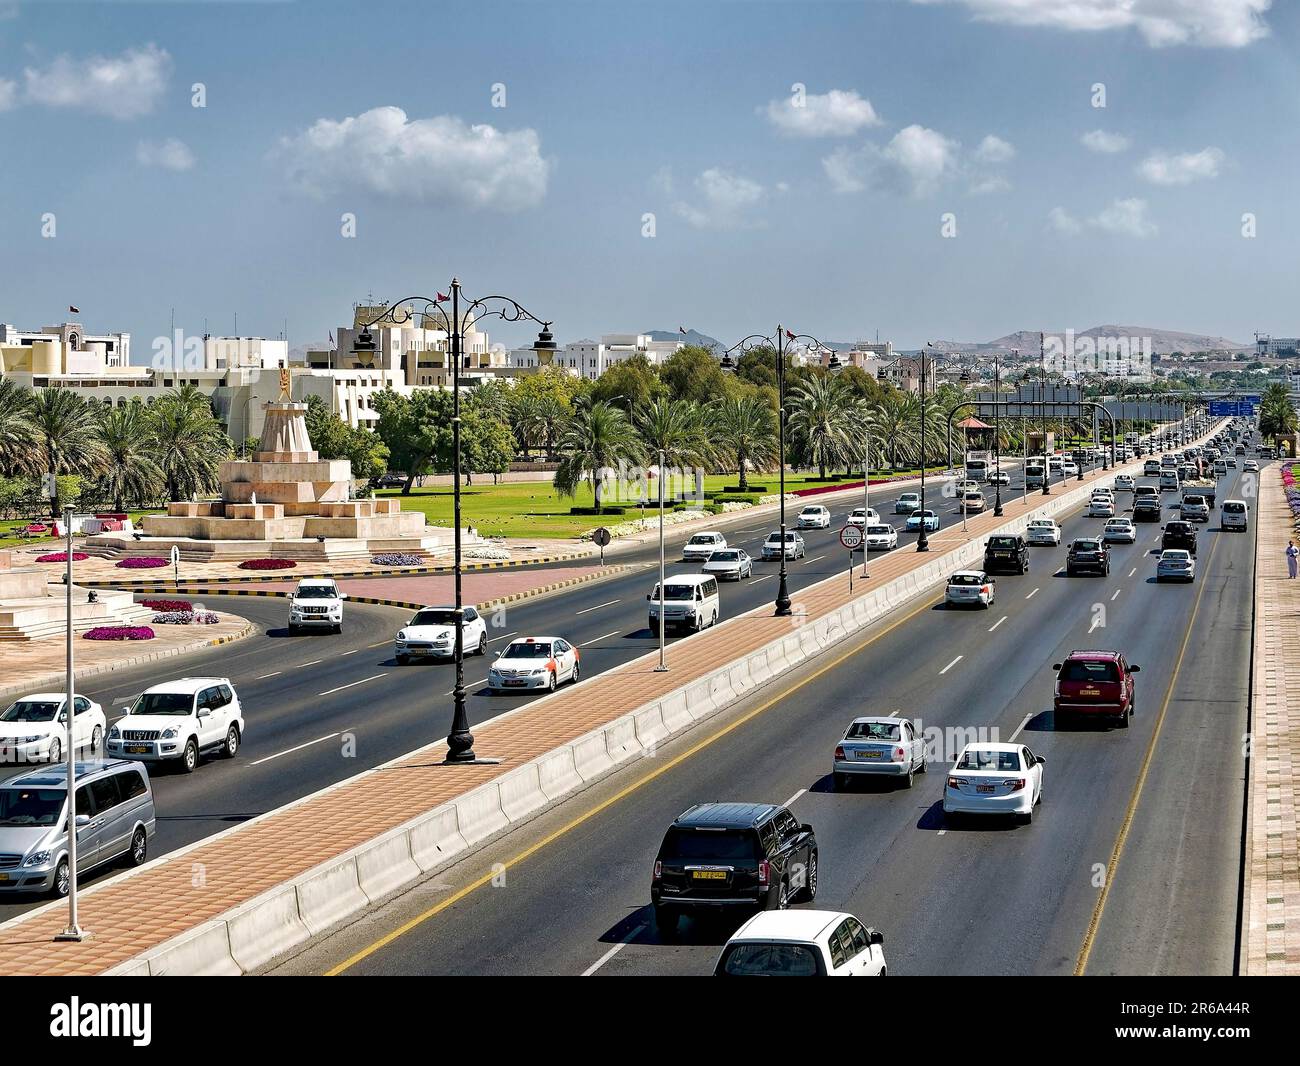 Sultan Qaboos Street, moschea, minareto, case, palme, Verde, auto, traffico, vista della città, Muscat, Oman, macello Foto Stock